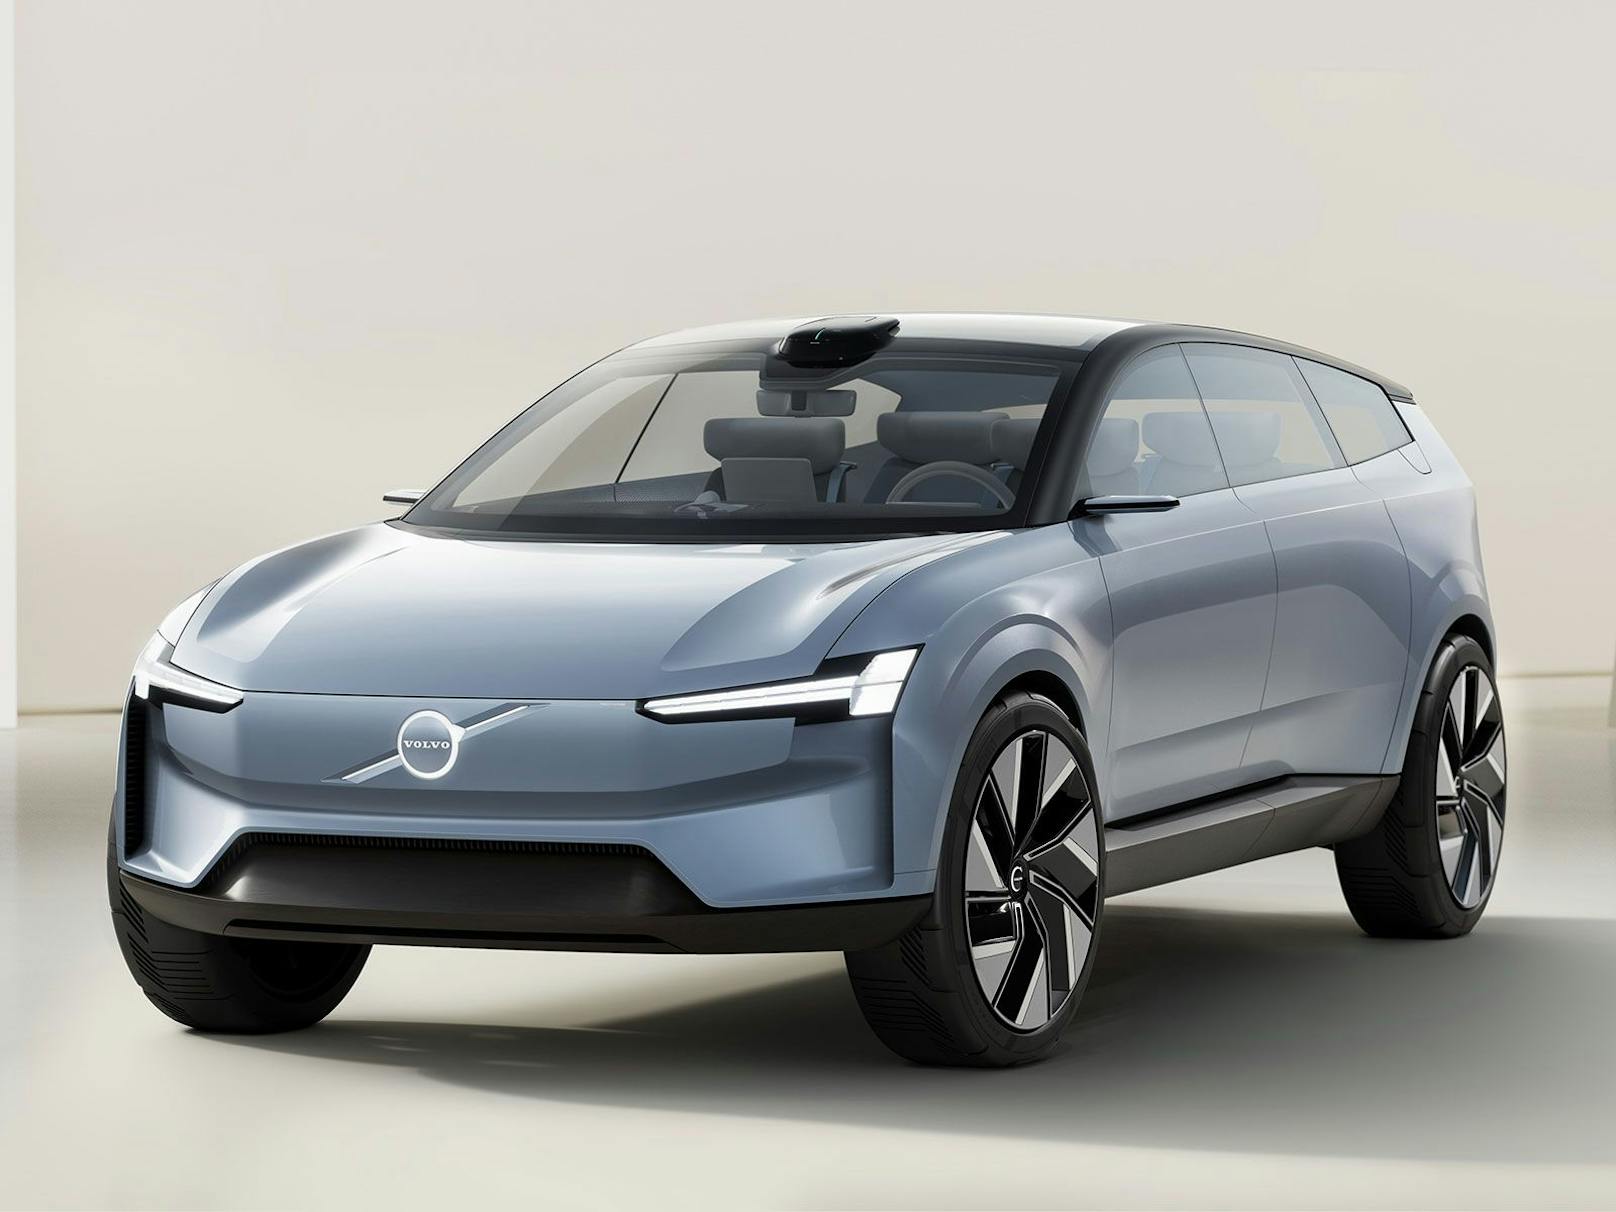 Volvo blickt mit dem Concept Recharge in die Zukunft